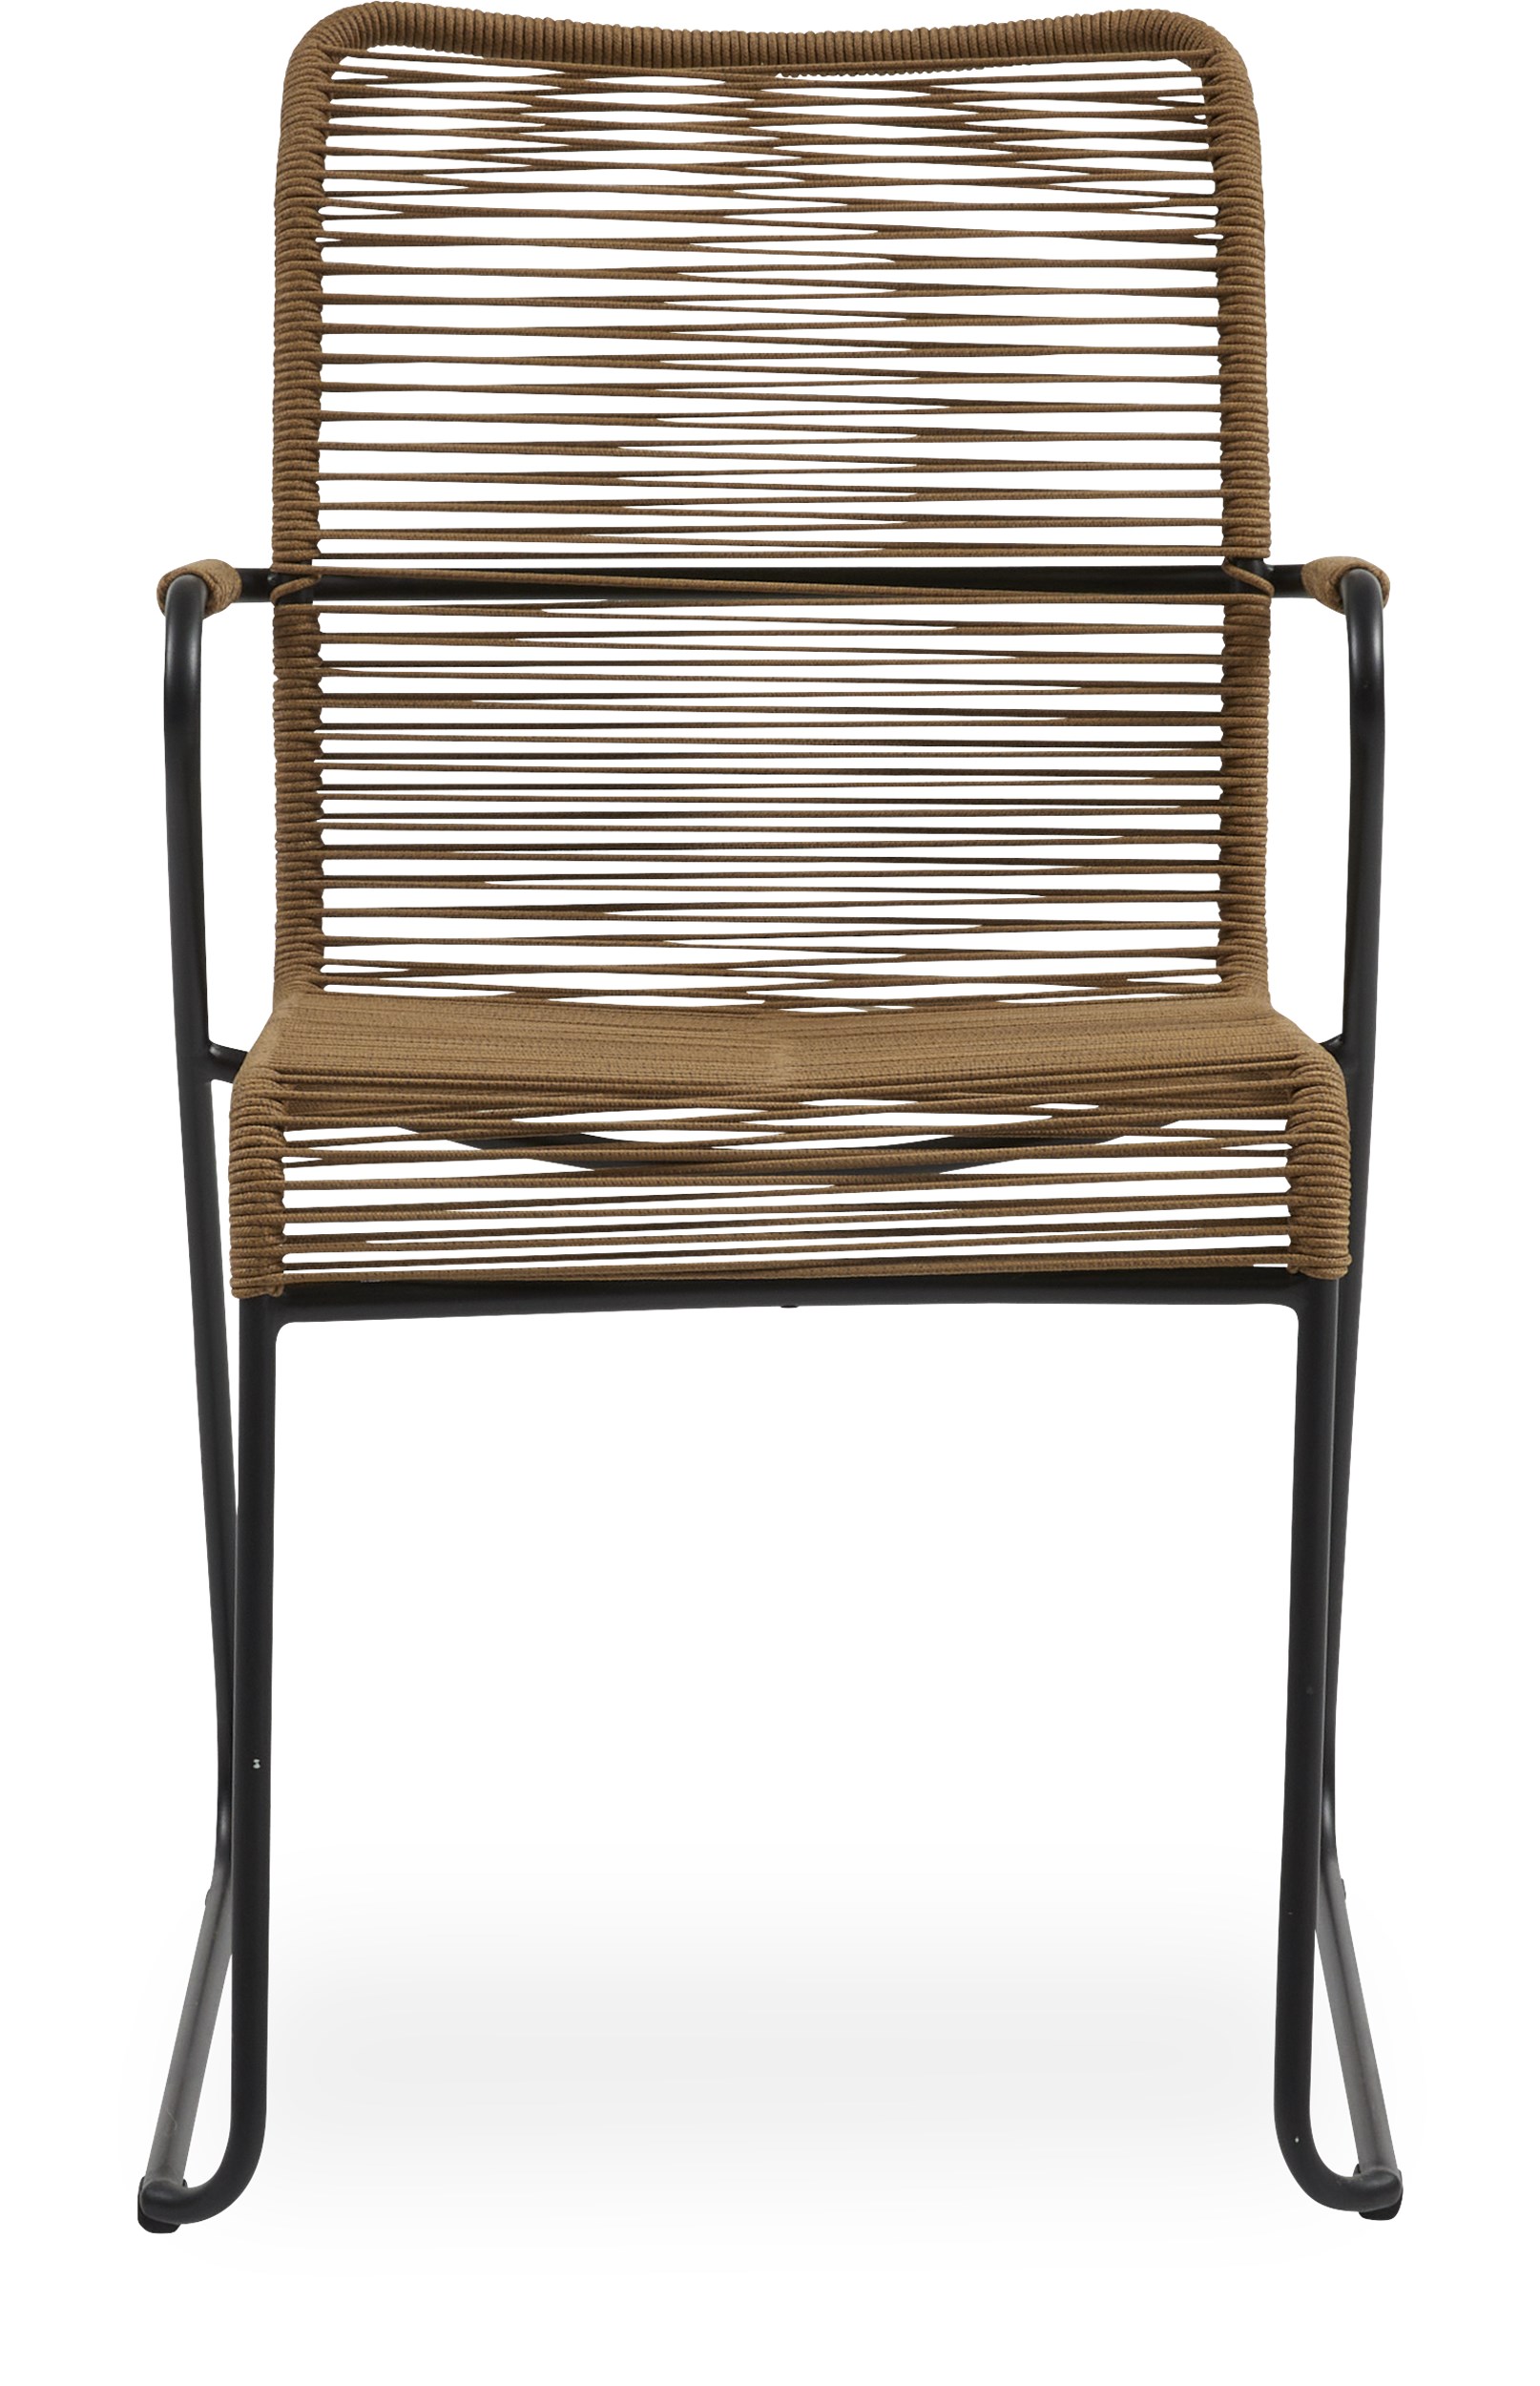 Branco Trädgårdsstol - Sits rygg i ocker rep och stomme i svartmålad stål